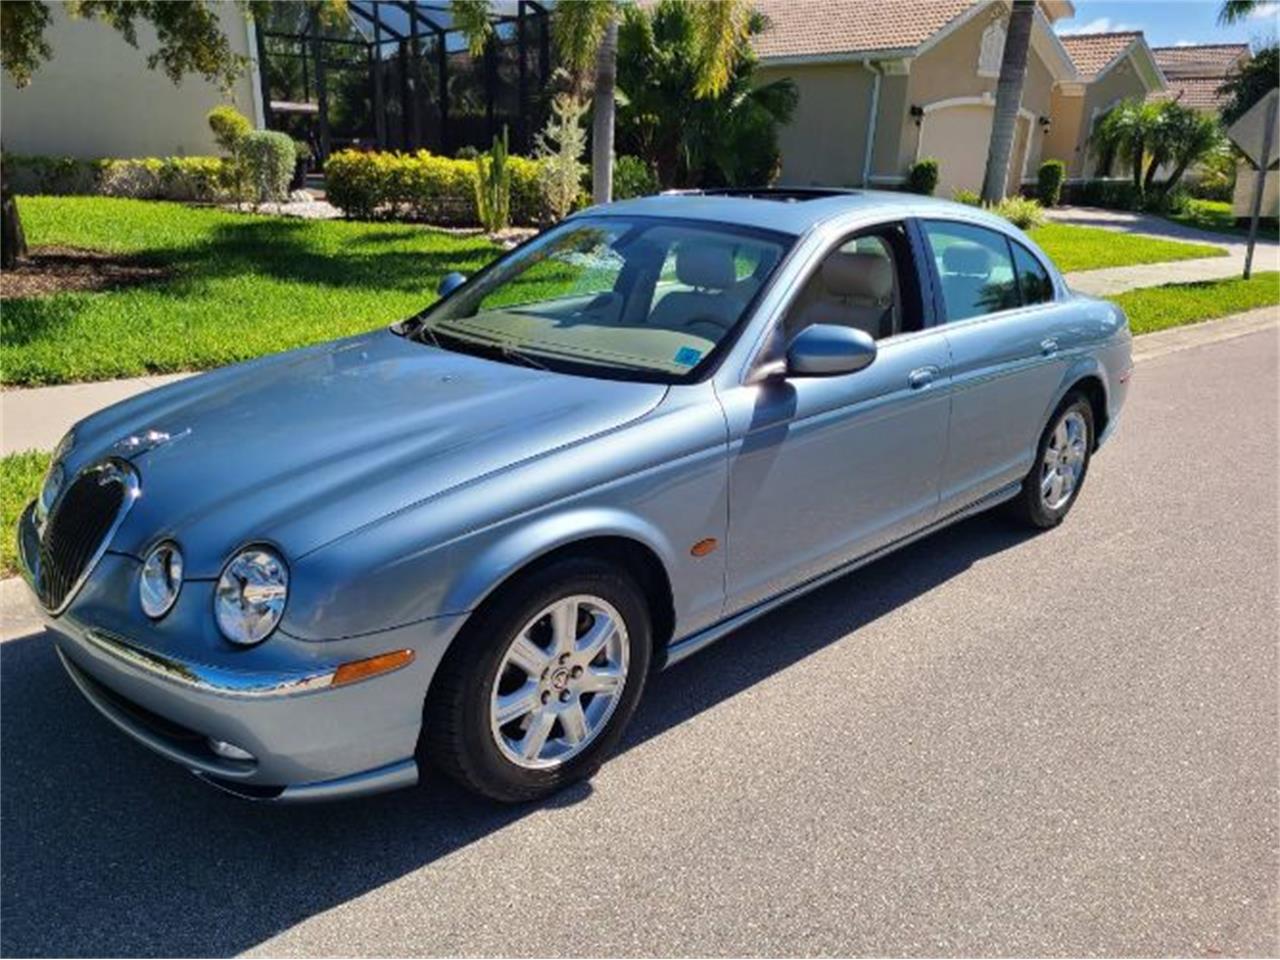 2004 Jaguar S-Type for Sale